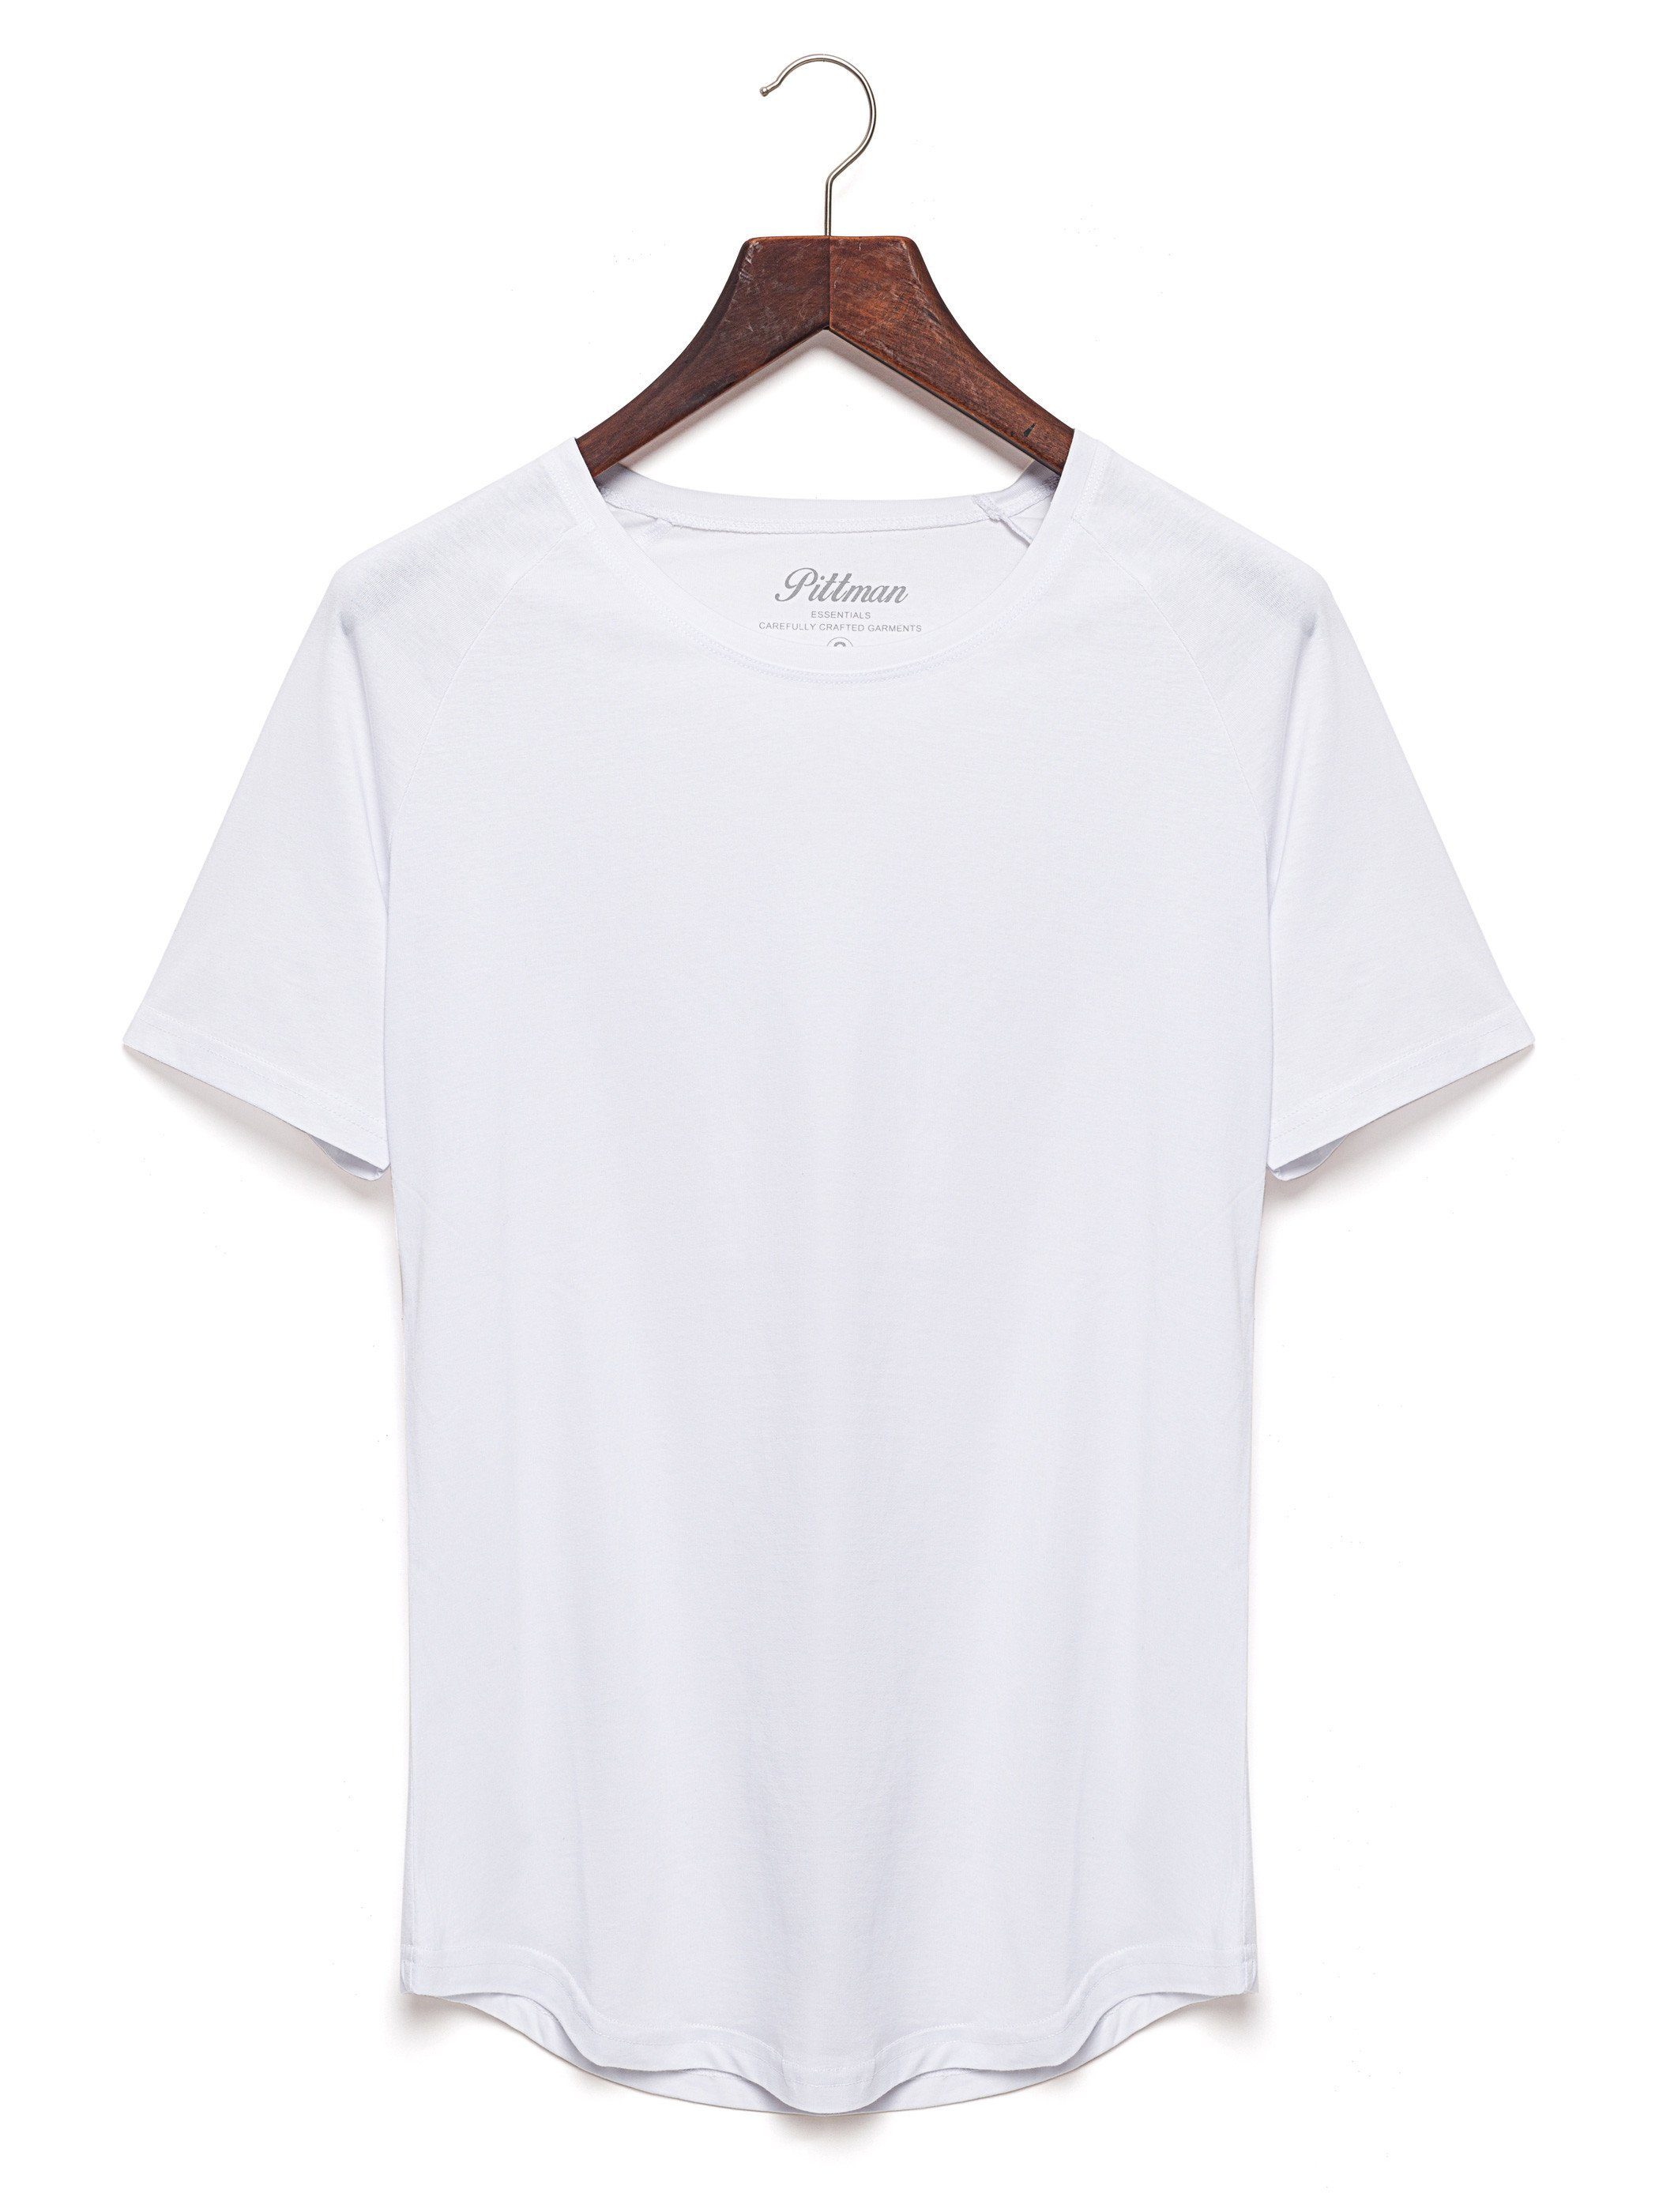 Pittman T-Shirt 3-Pack Herren 1106013) Finn 3er-Pack) T-Shirt (Set, Oversize T-Shirt Rundhals White Weiß (Bright